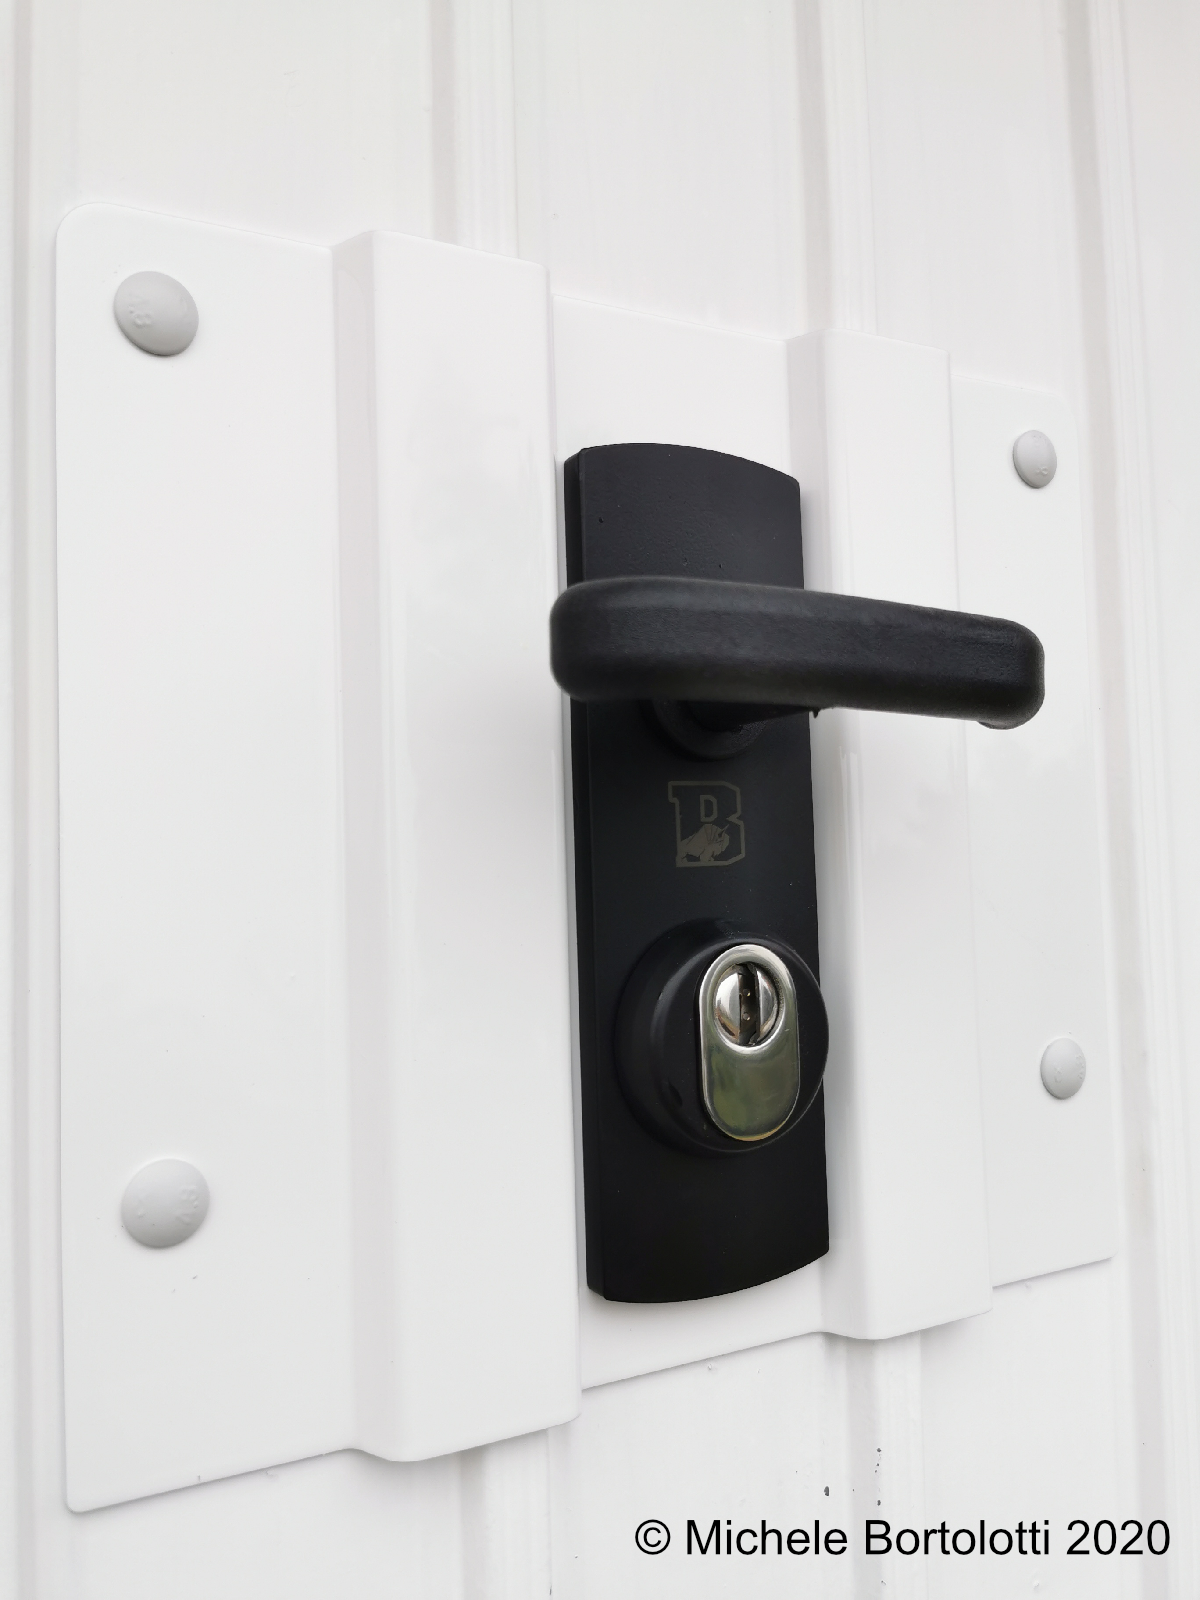 Cambiare serratura Porta Blindata - Le linee guida di Gruppo Sicurezza